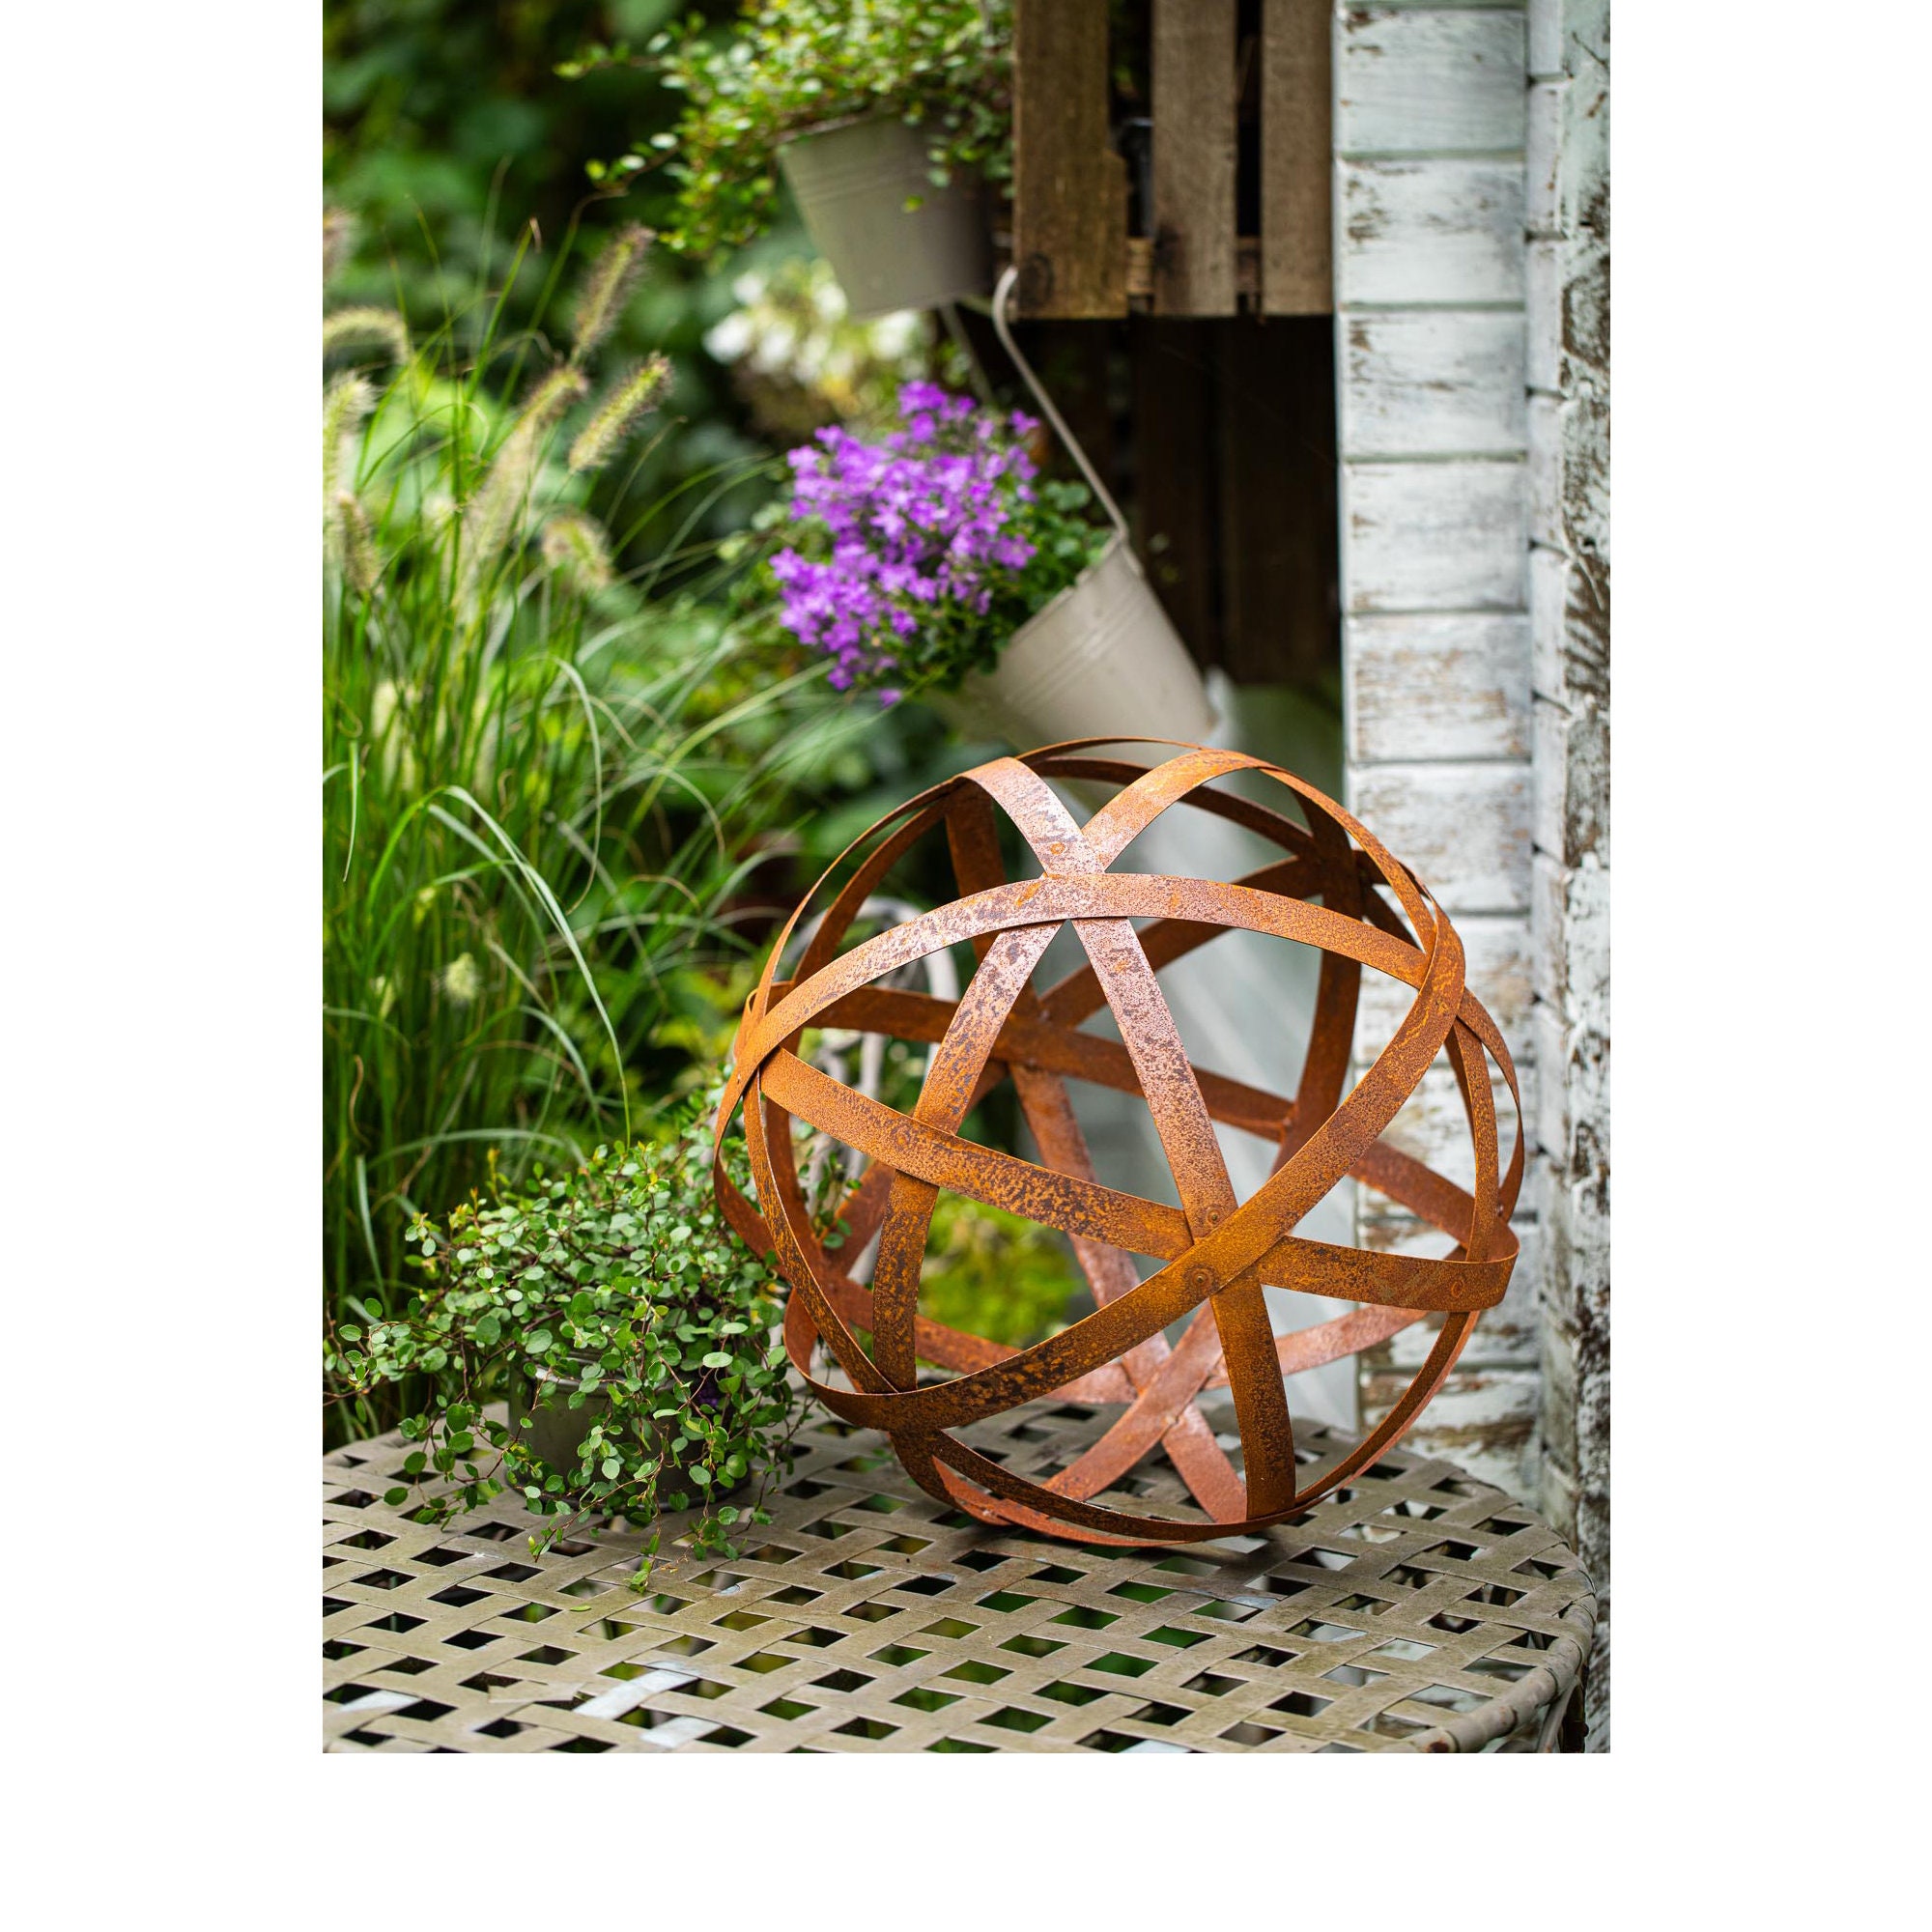 Boule deco jardin métal rouillé craquelé - sphère acier corten